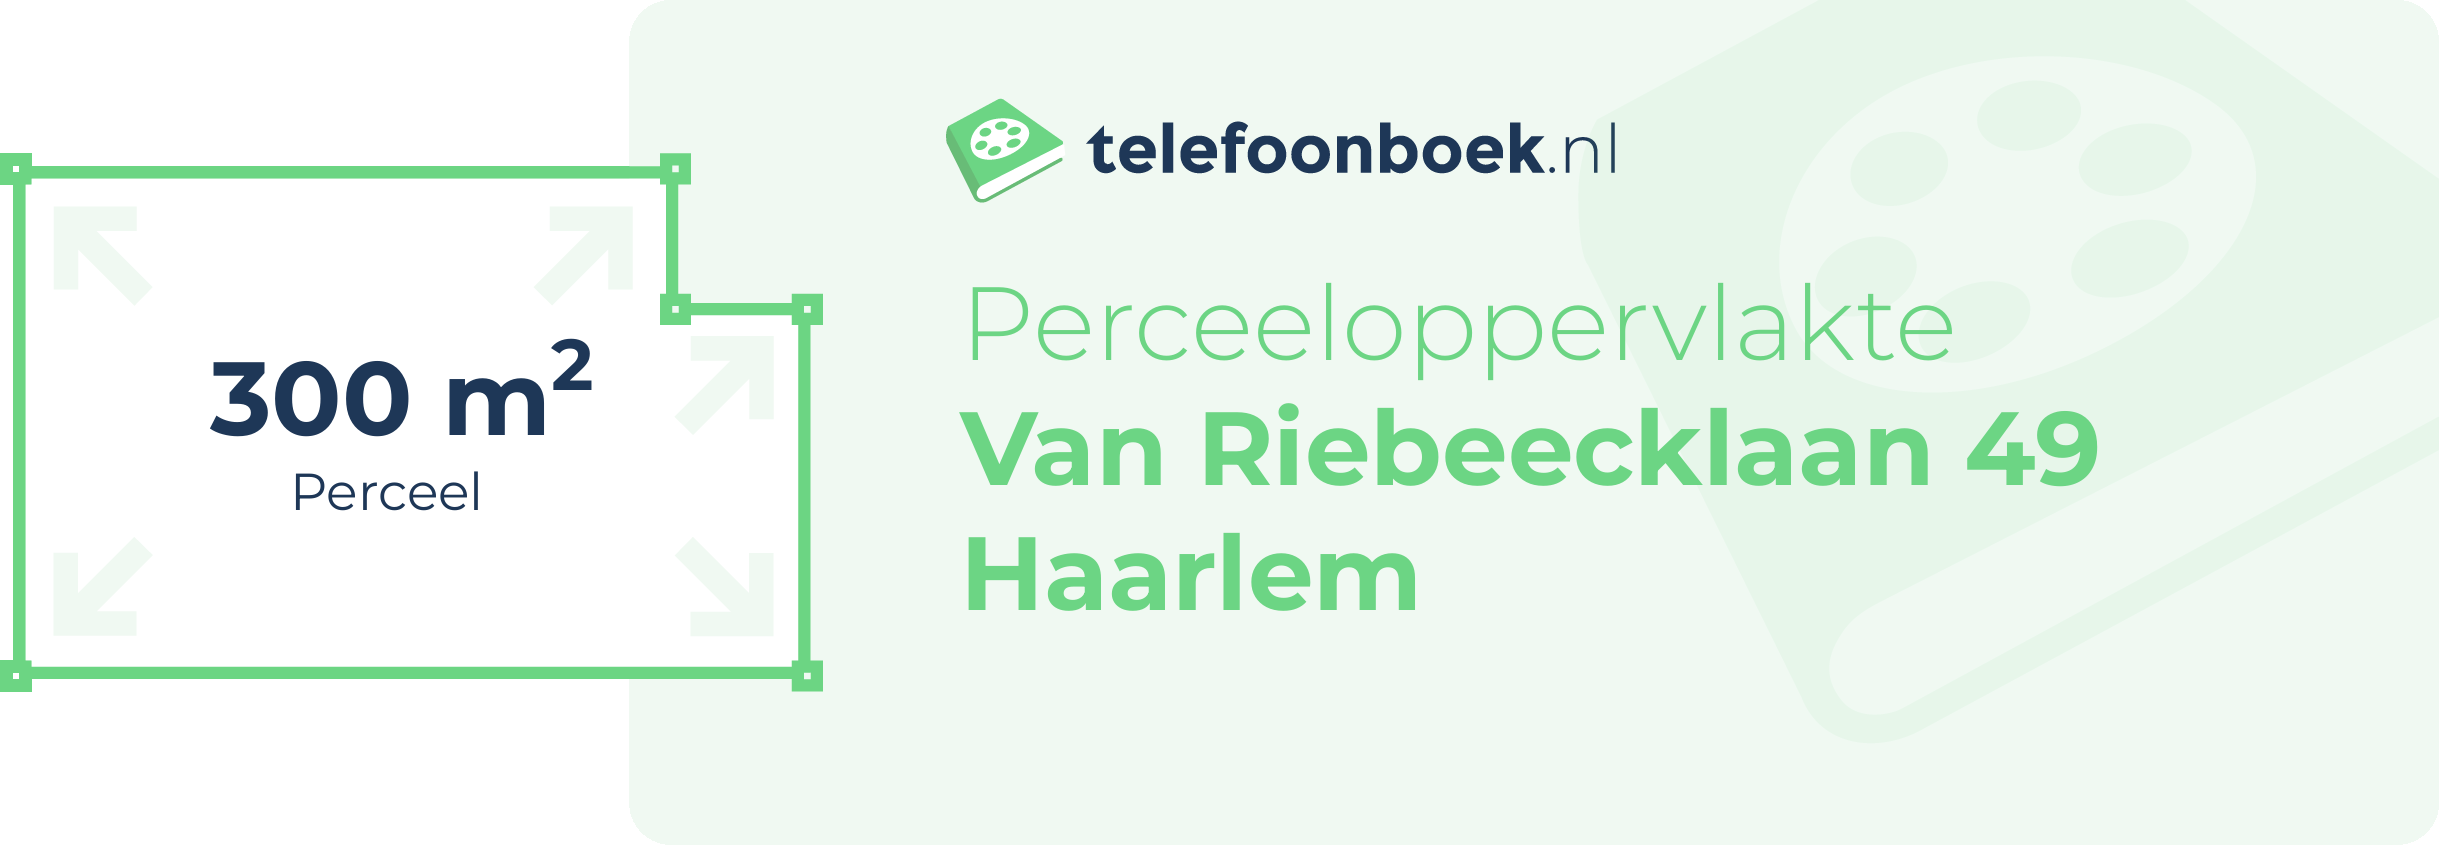 Perceeloppervlakte Van Riebeecklaan 49 Haarlem